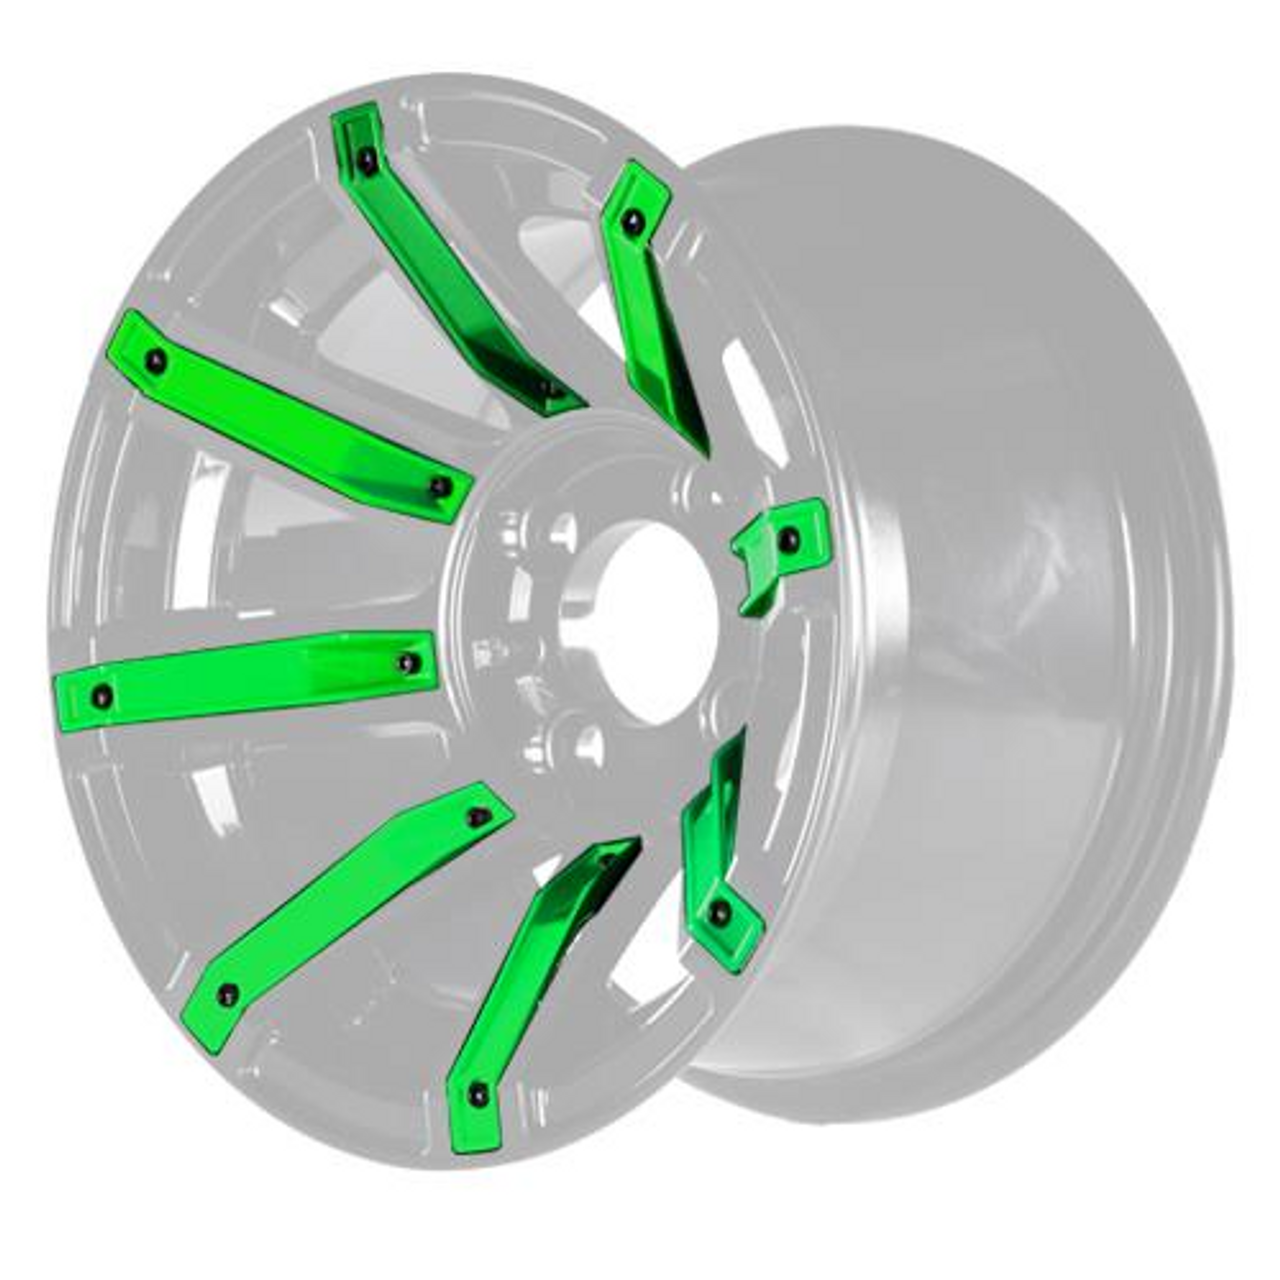 Green Inserts for Avenger 12x7 Wheel, 19-082-GRN